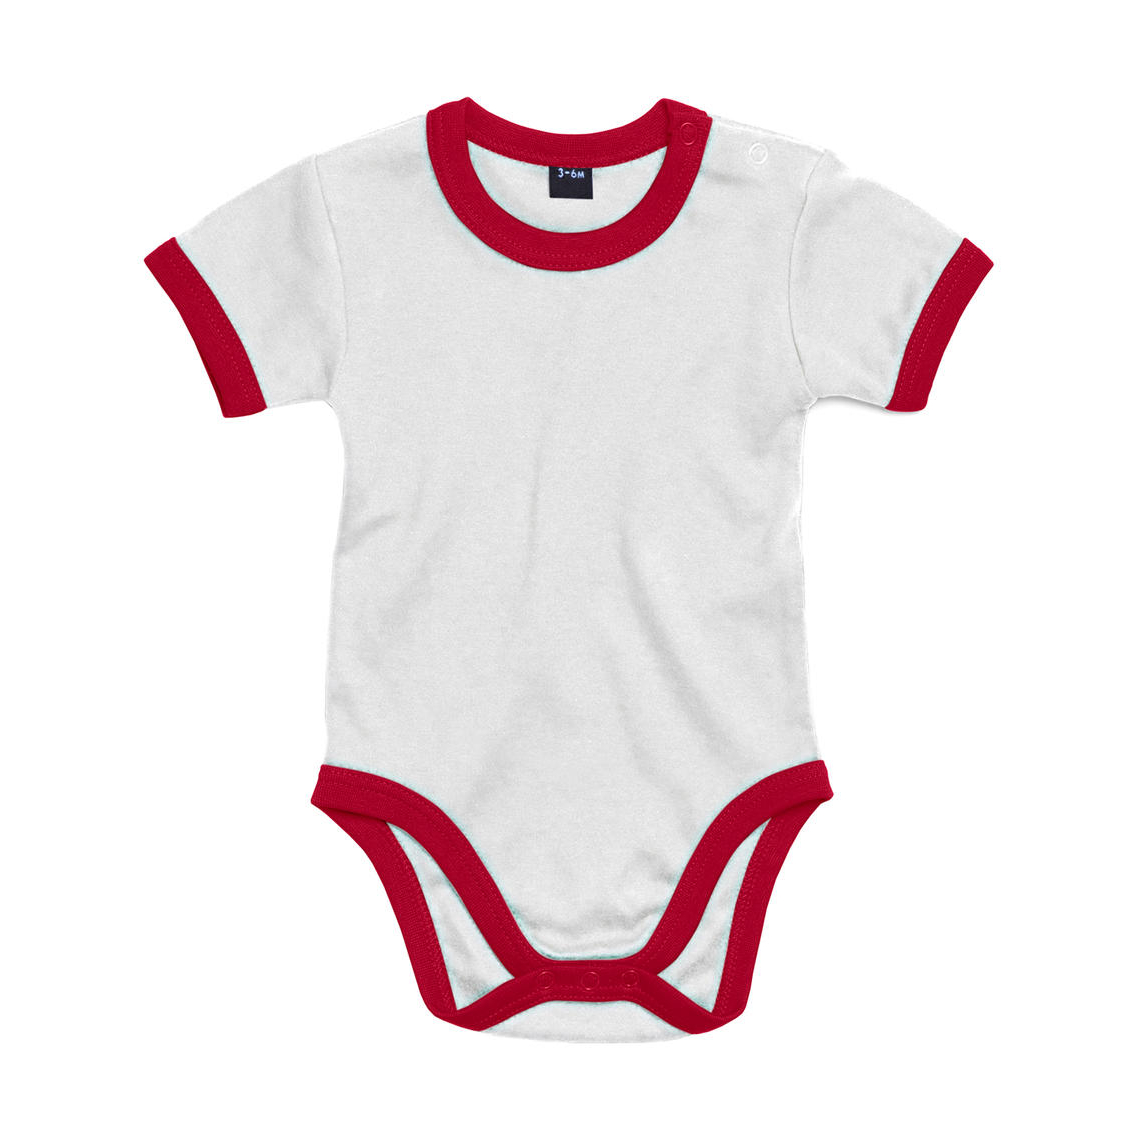 Body dětské Babybugz Ringer - bílé-červené, 3-6 měsíců